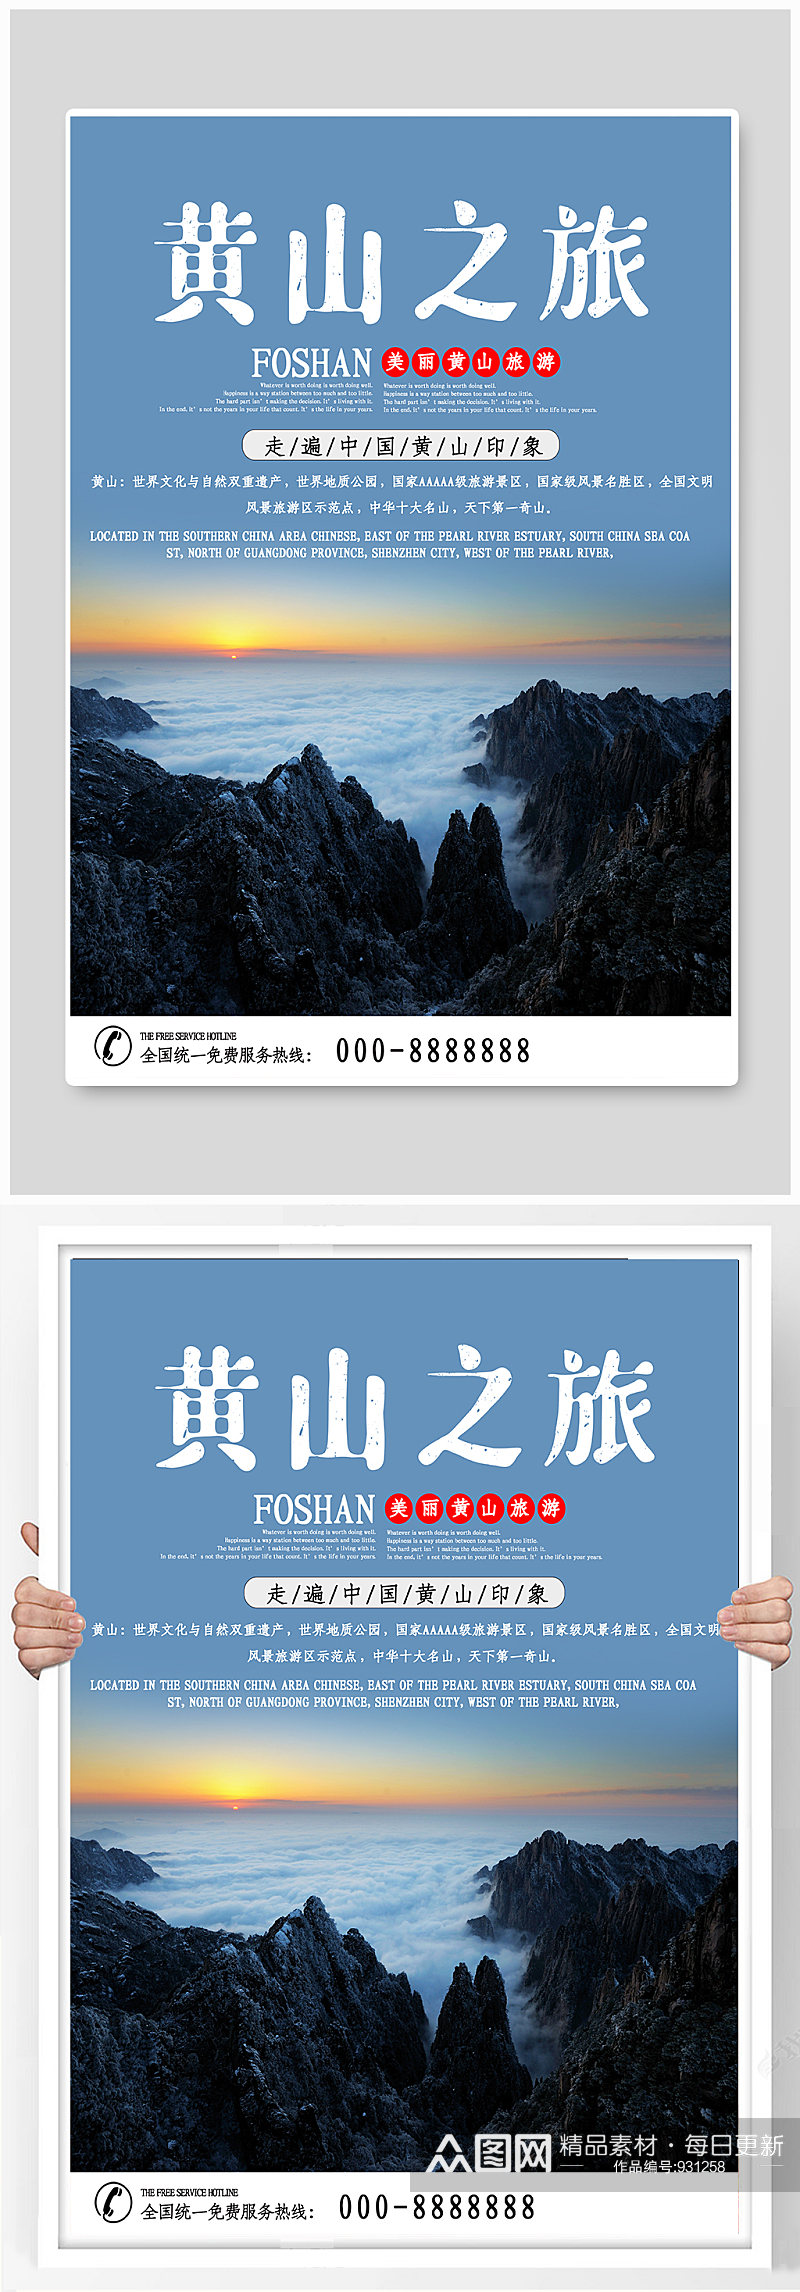 黄山旅游宣传海报素材